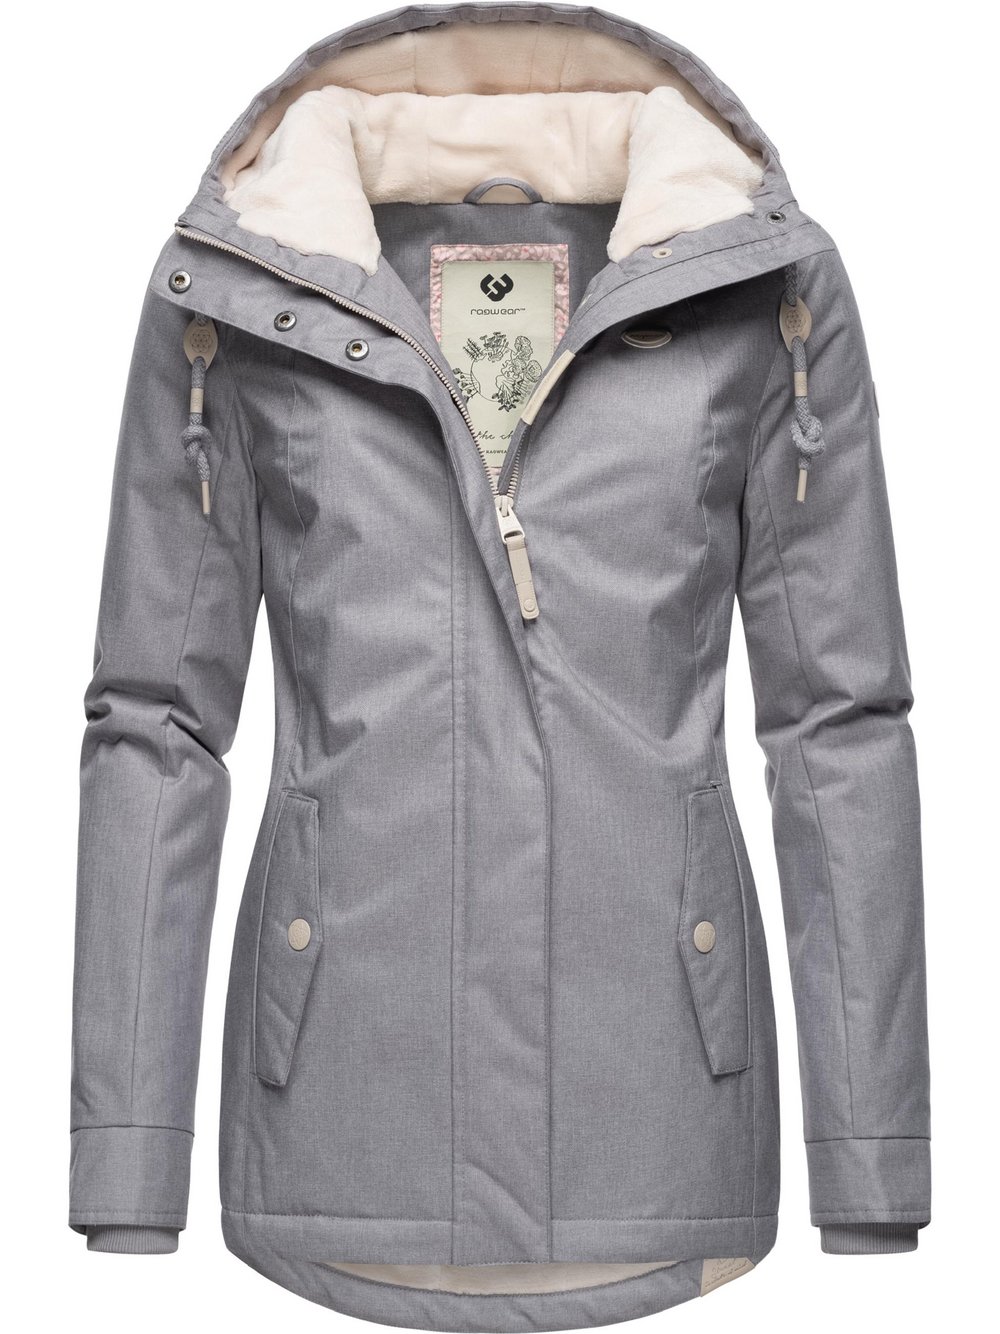 Fleece, Ladendirekt Winterjacke für Ragwear Preisvergleich aus GTIN: 4064601715332 L, Damen grau, Größe | (40), L